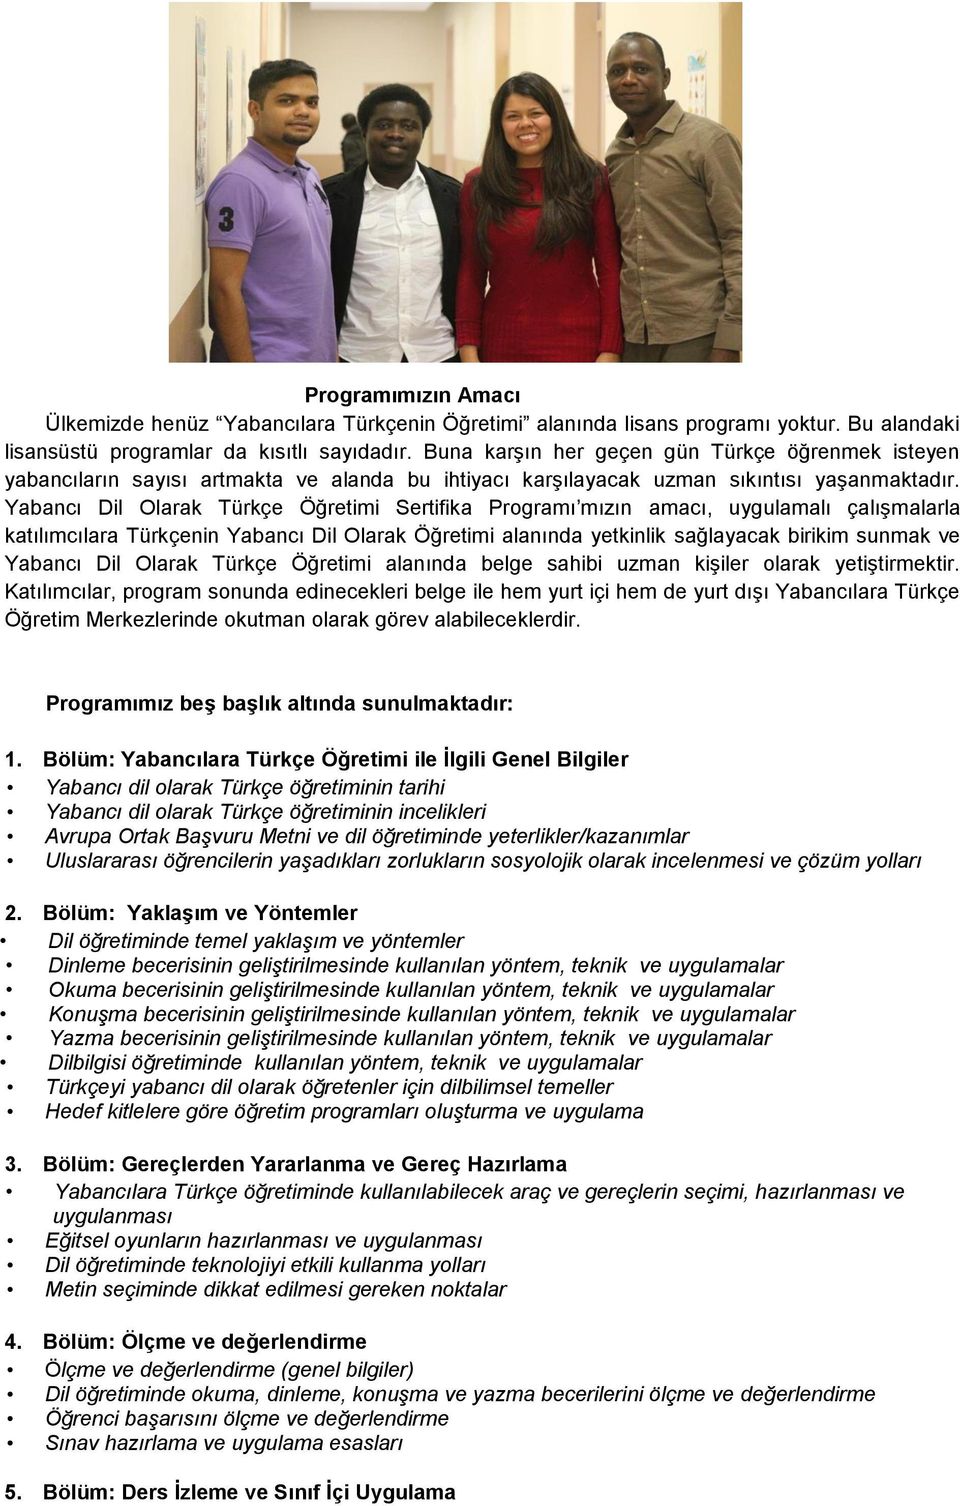 Yabancı Dil Olarak Türkçe Öğretimi Sertifika Programı mızın amacı, uygulamalı çalışmalarla katılımcılara Türkçenin Yabancı Dil Olarak Öğretimi alanında yetkinlik sağlayacak birikim sunmak ve Yabancı